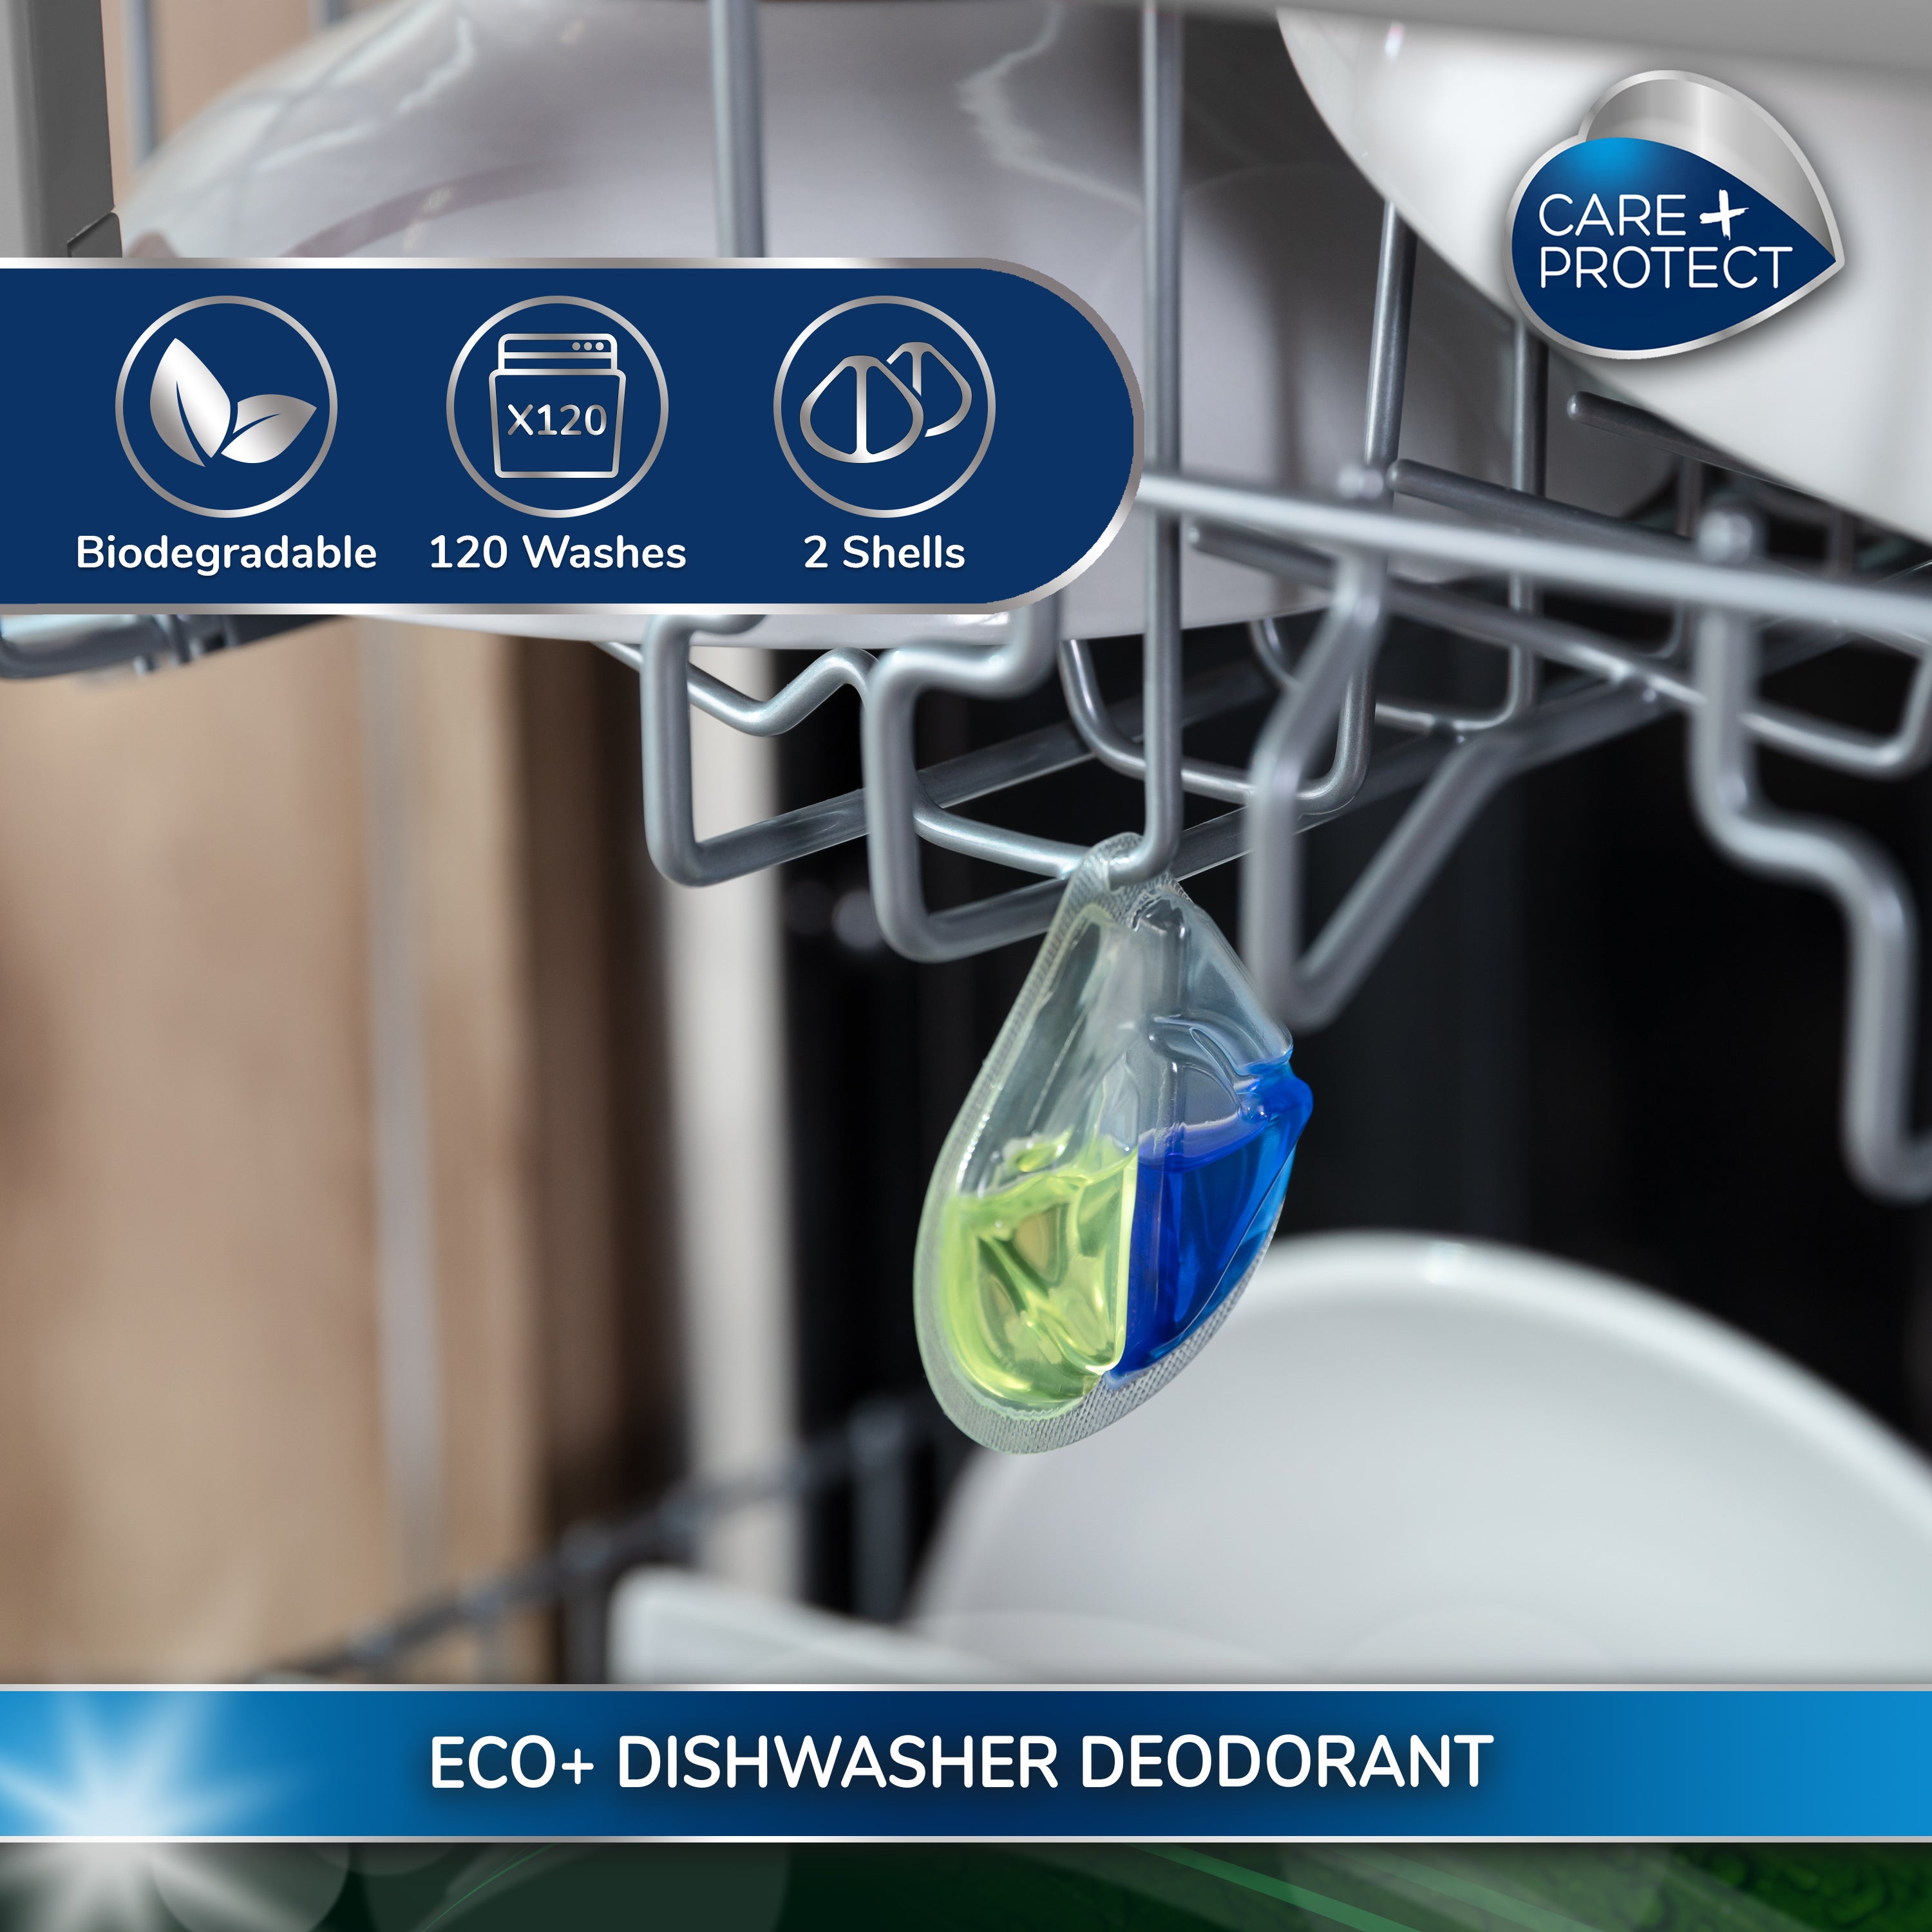 CARE + PROTECT ECO+ Deodorant for Dishwasher, Eliminates Bad Odours, Long-Lasting Lemon Fragrance, 2 Shells, Upto 120 Washes